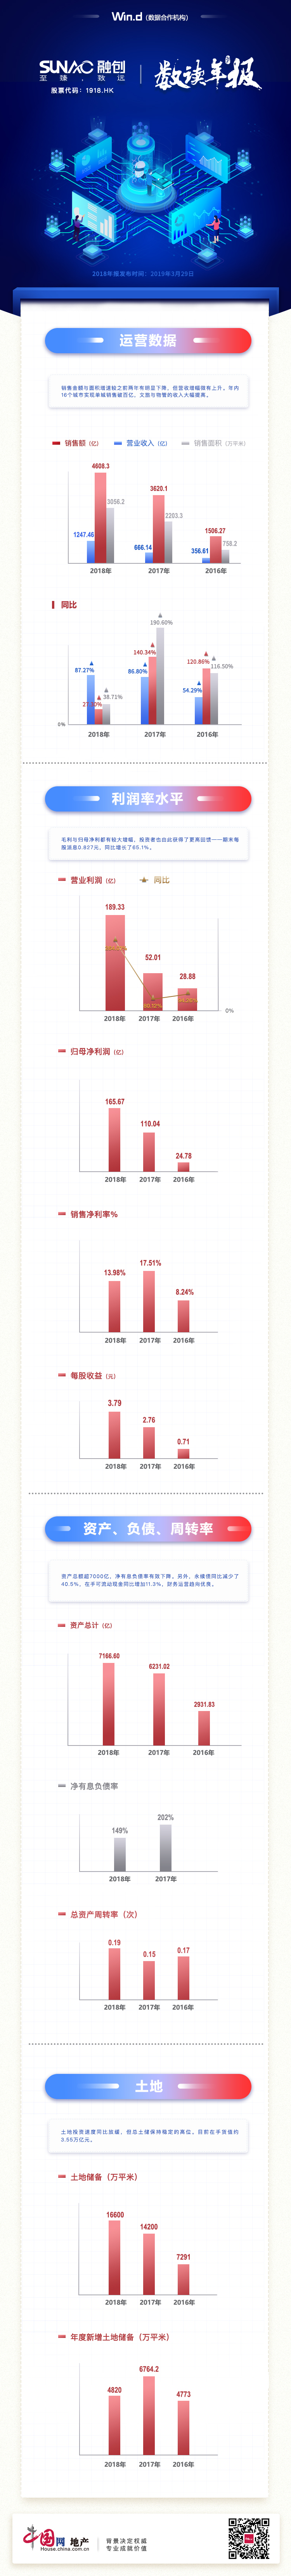 数读年报|融创中国：毛利归母净利明显增长 在手货值约3.55万亿元-中国网地产